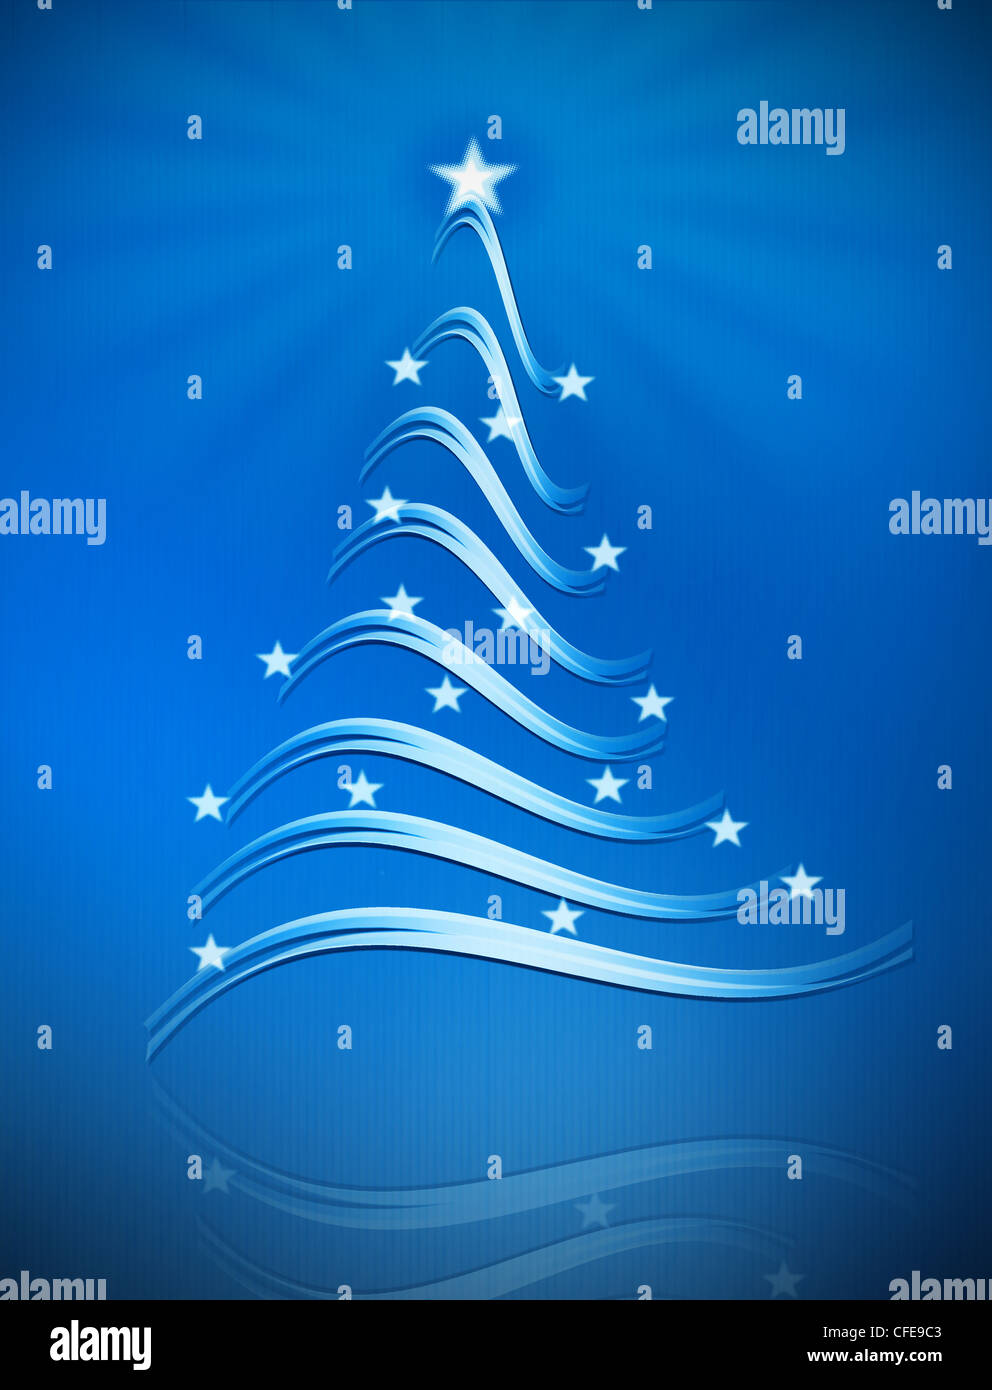 Weihnachtsbaum mit Sternen auf blauem Hintergrund digitale illustration Stockfoto